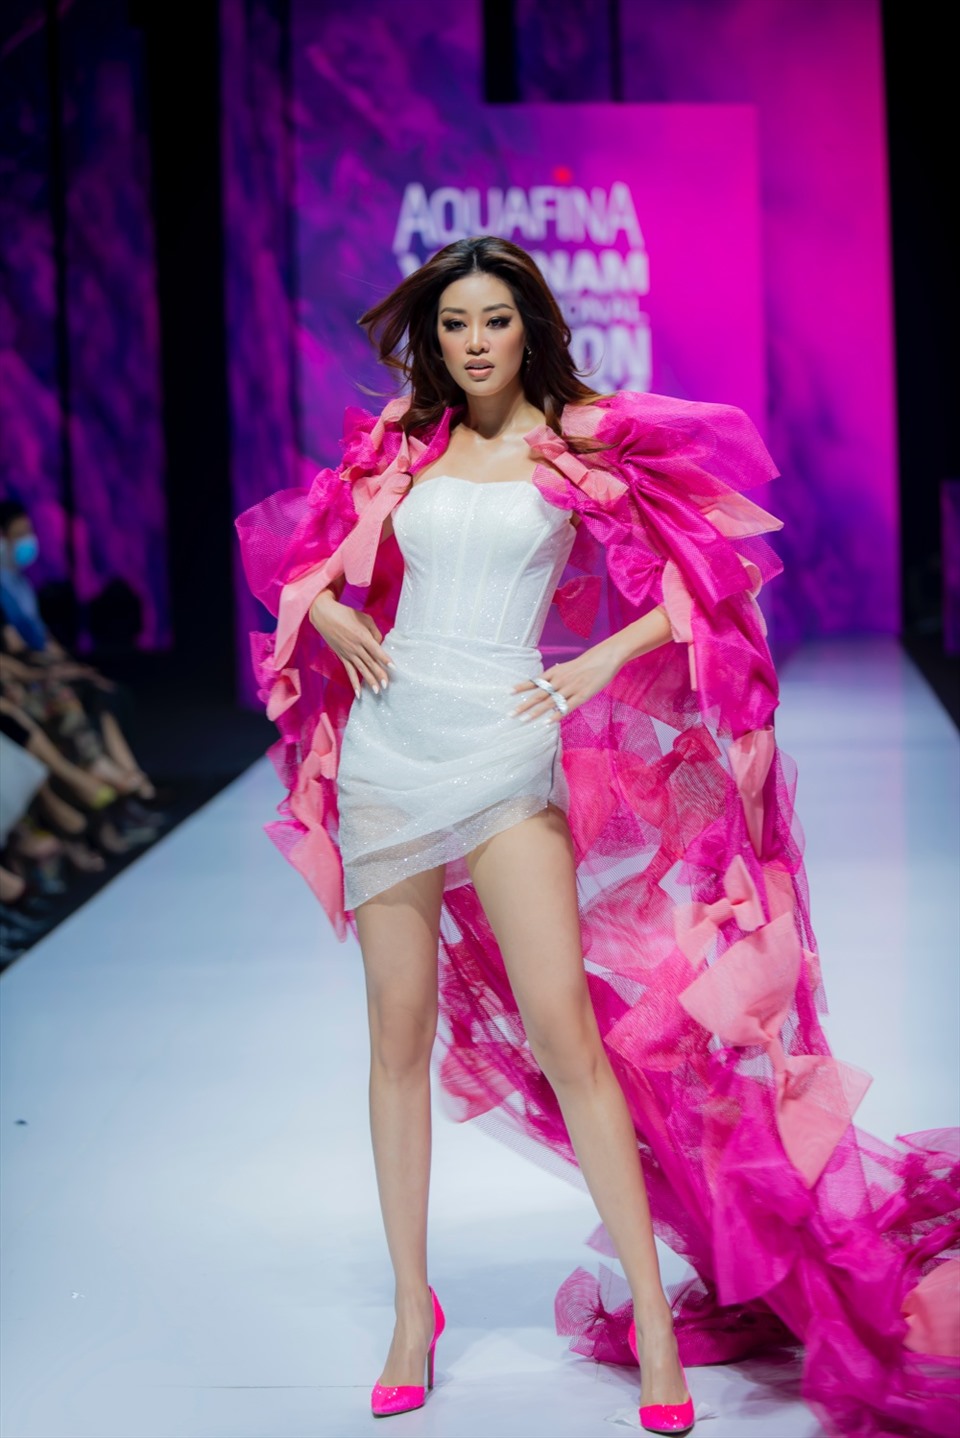 Hoa hậu Hoàn vũ 2019 - Khánh Vân diện thiết kế ấn tượng với đầm body màu trắng kết hợp cùng áo choàng màu hồng được đính kết các chi tiết nơ tinh tế.